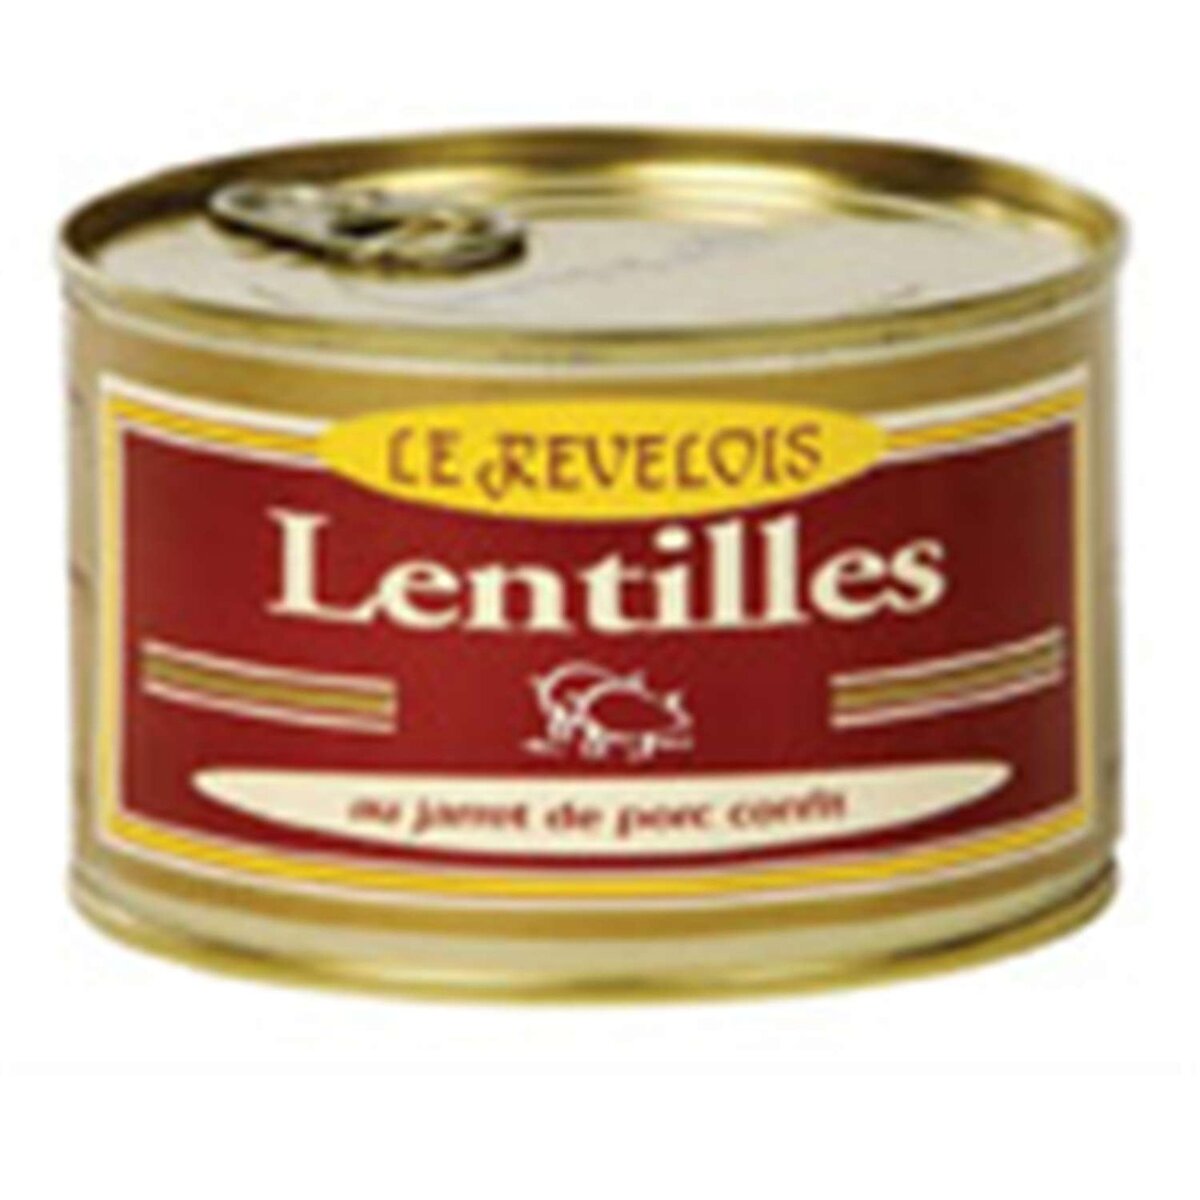 LE REVELOIS Le Revelois Lentilles au jarret de porc confit 420g 1 personne 420g